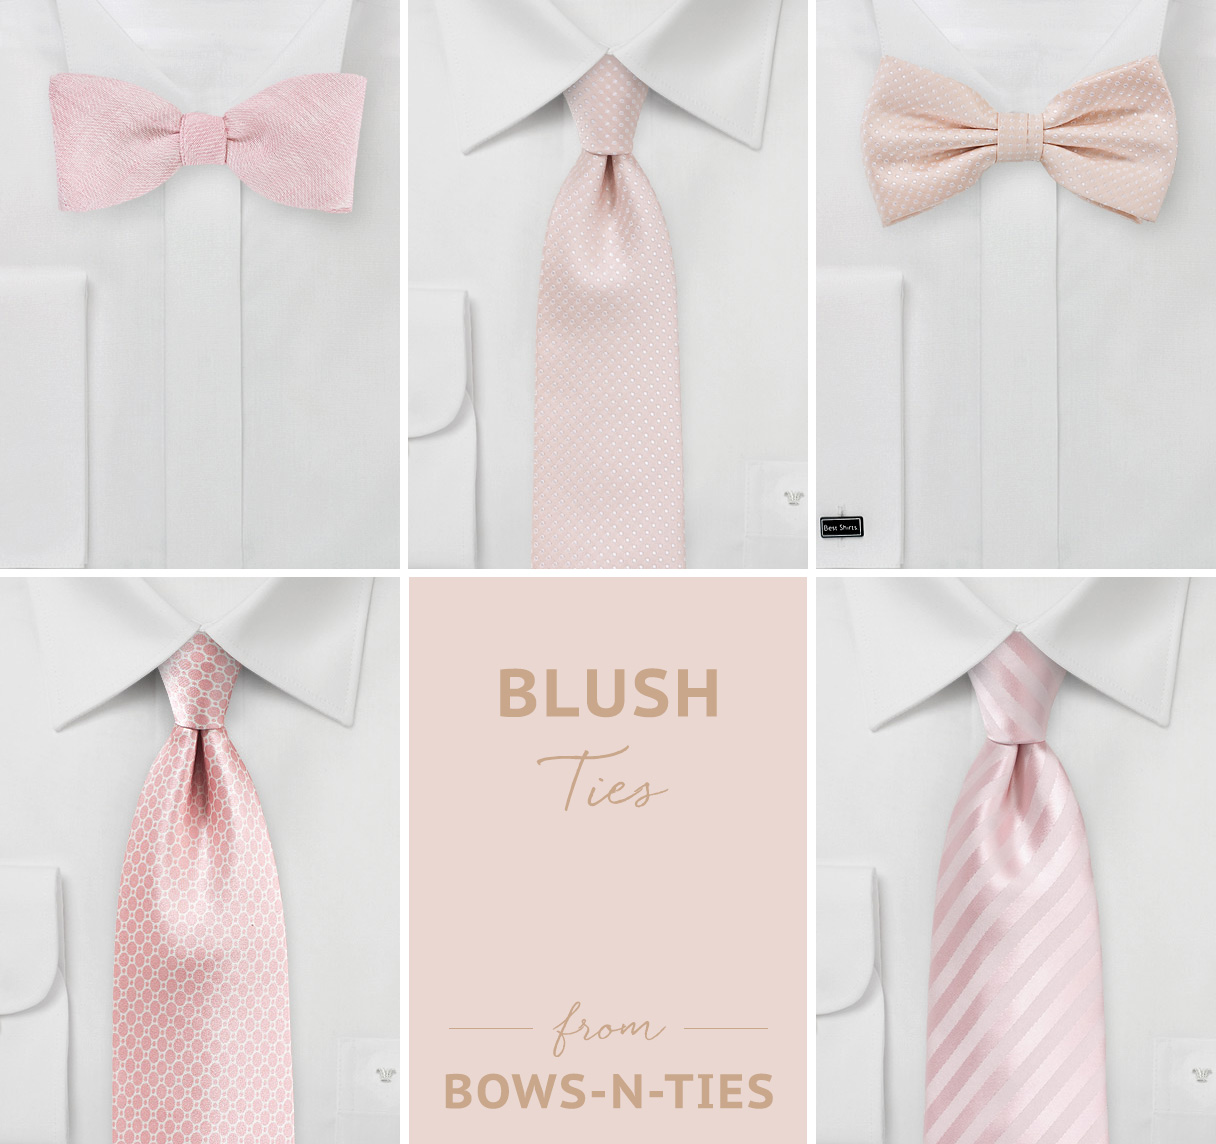 Blush Ties from Bows-N-Ties